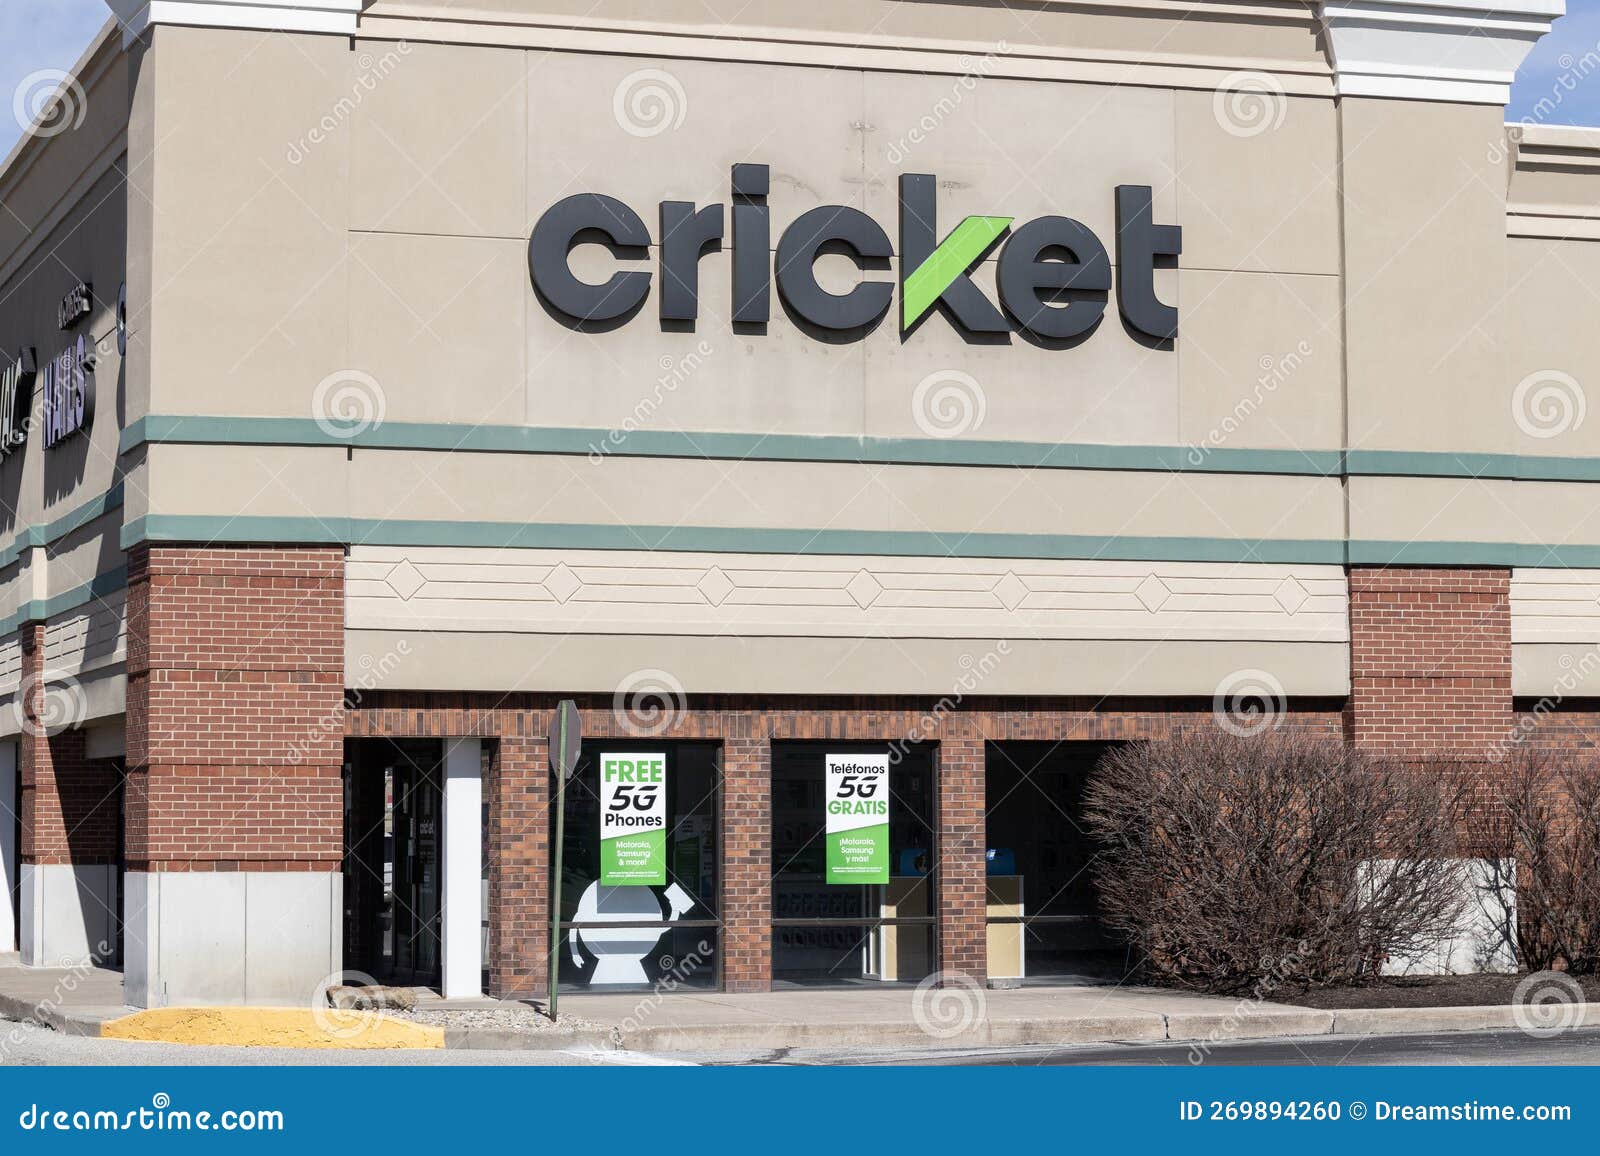 Cricket Wireless Retail Store